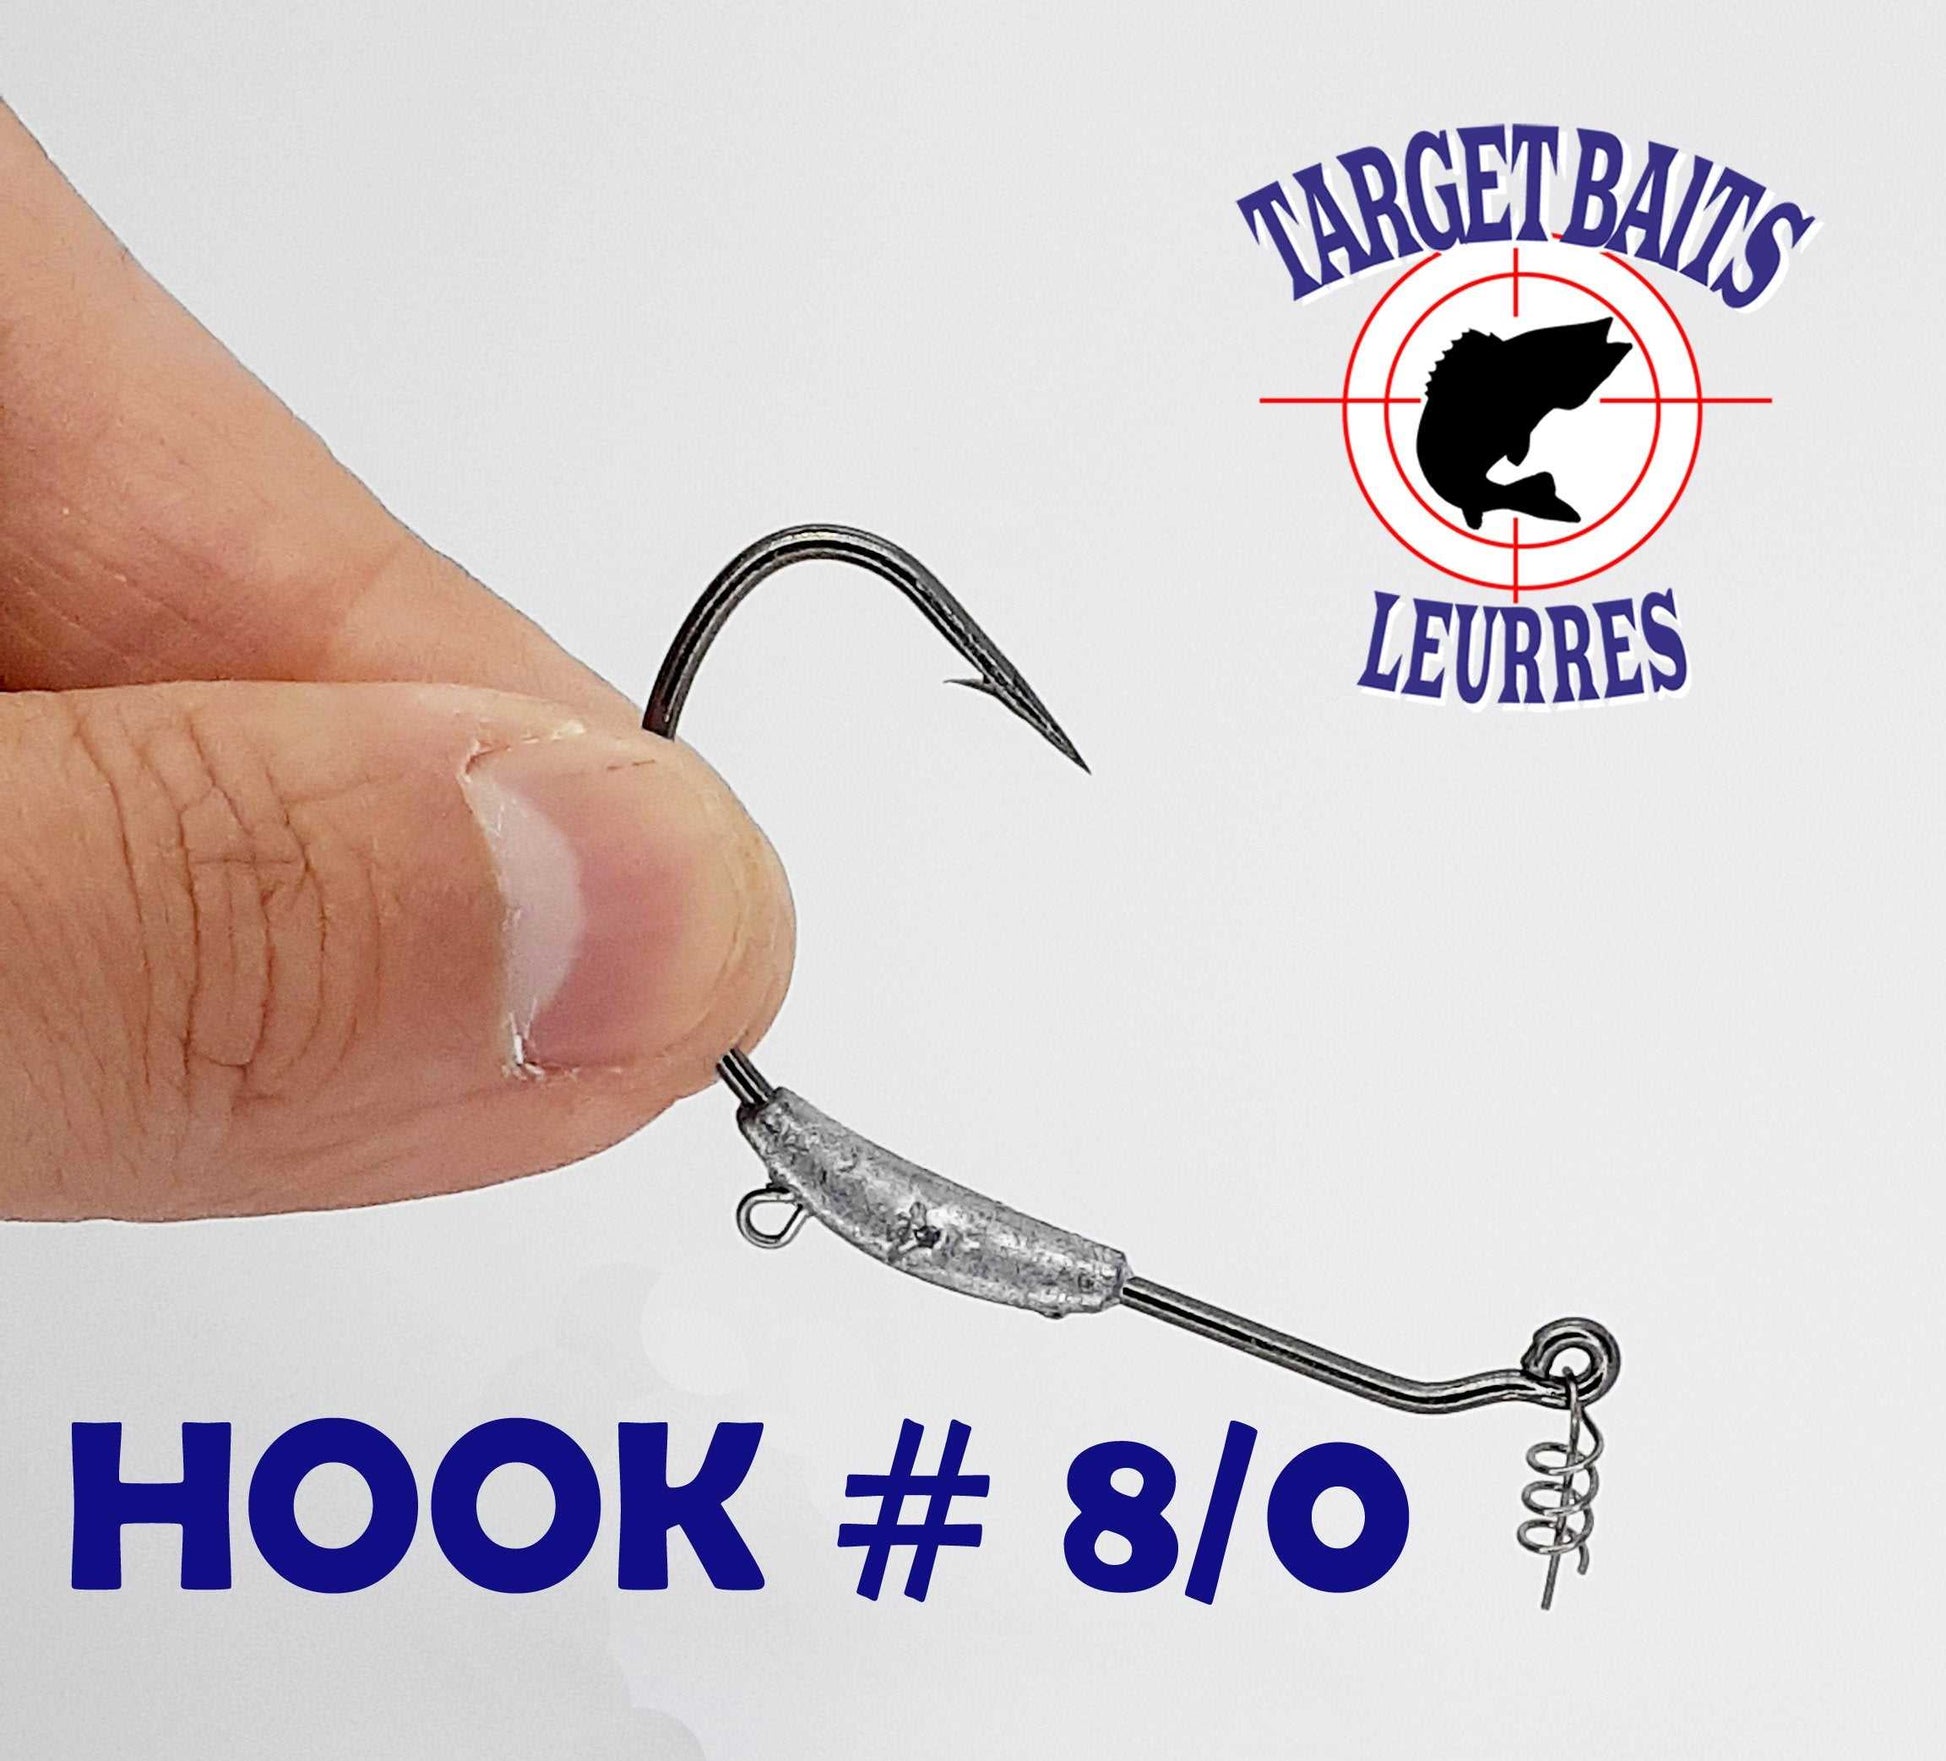 Anti-Weed Hook #8/0 – Target Baits Leurres